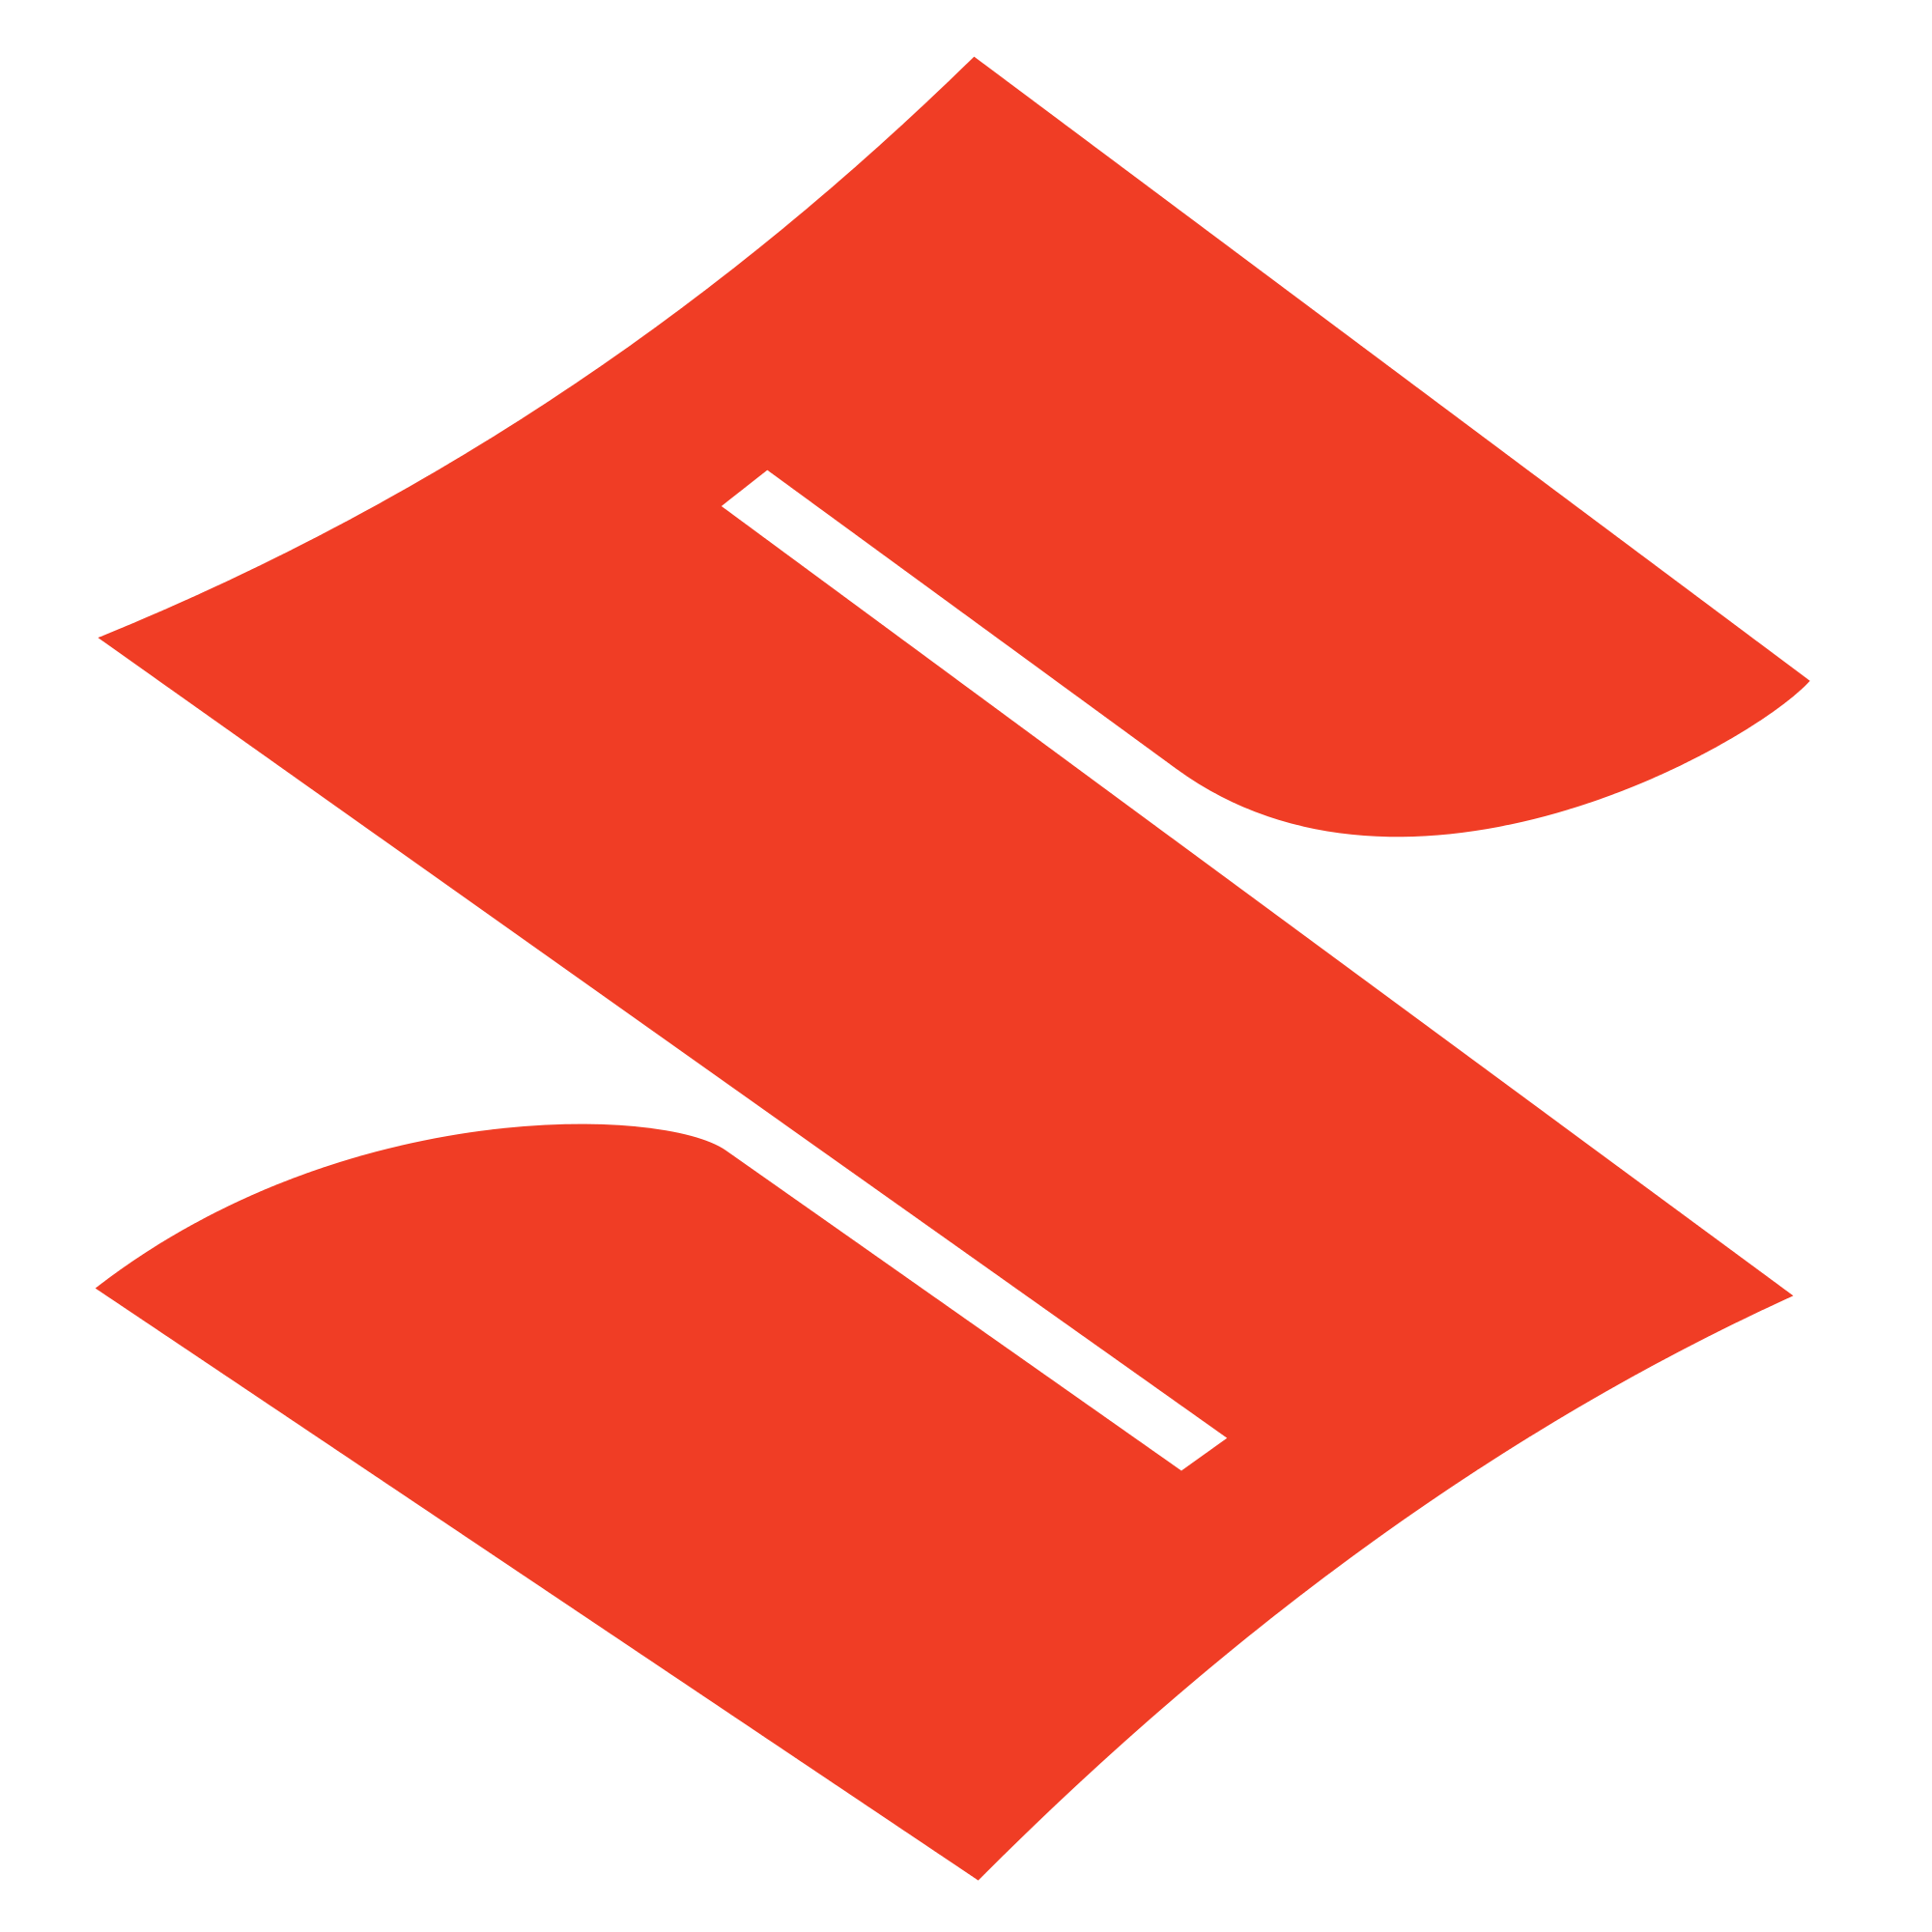 Imagen de PNG del símbolo de Suzuki